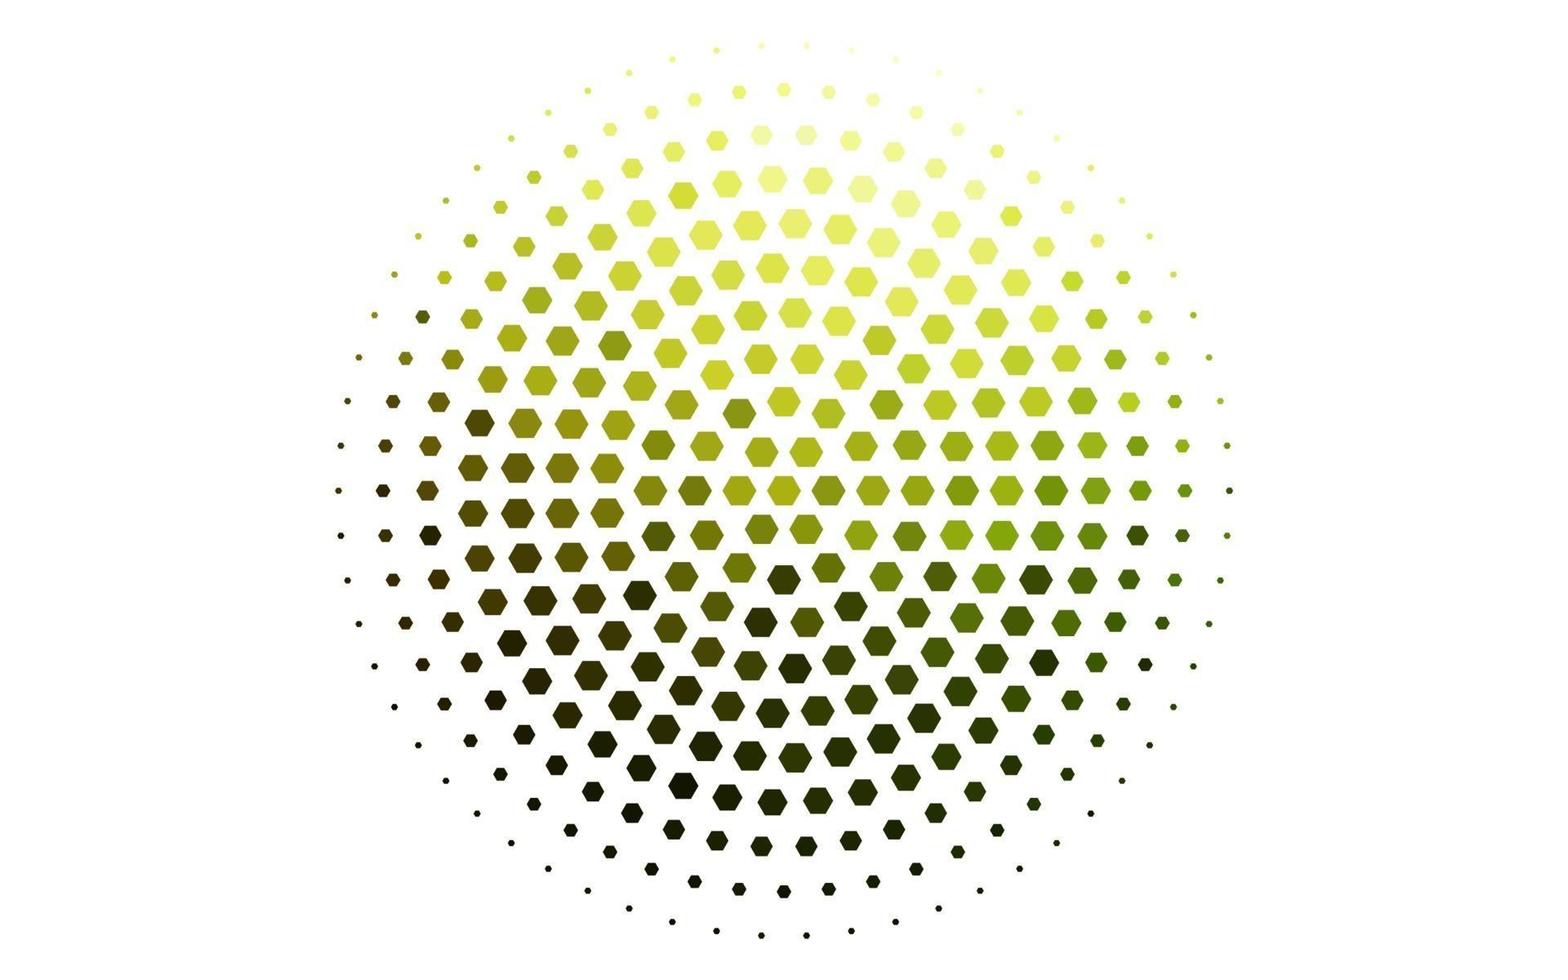 hellgrünes, gelbes Vektorlayout mit sechseckigen Formen. vektor